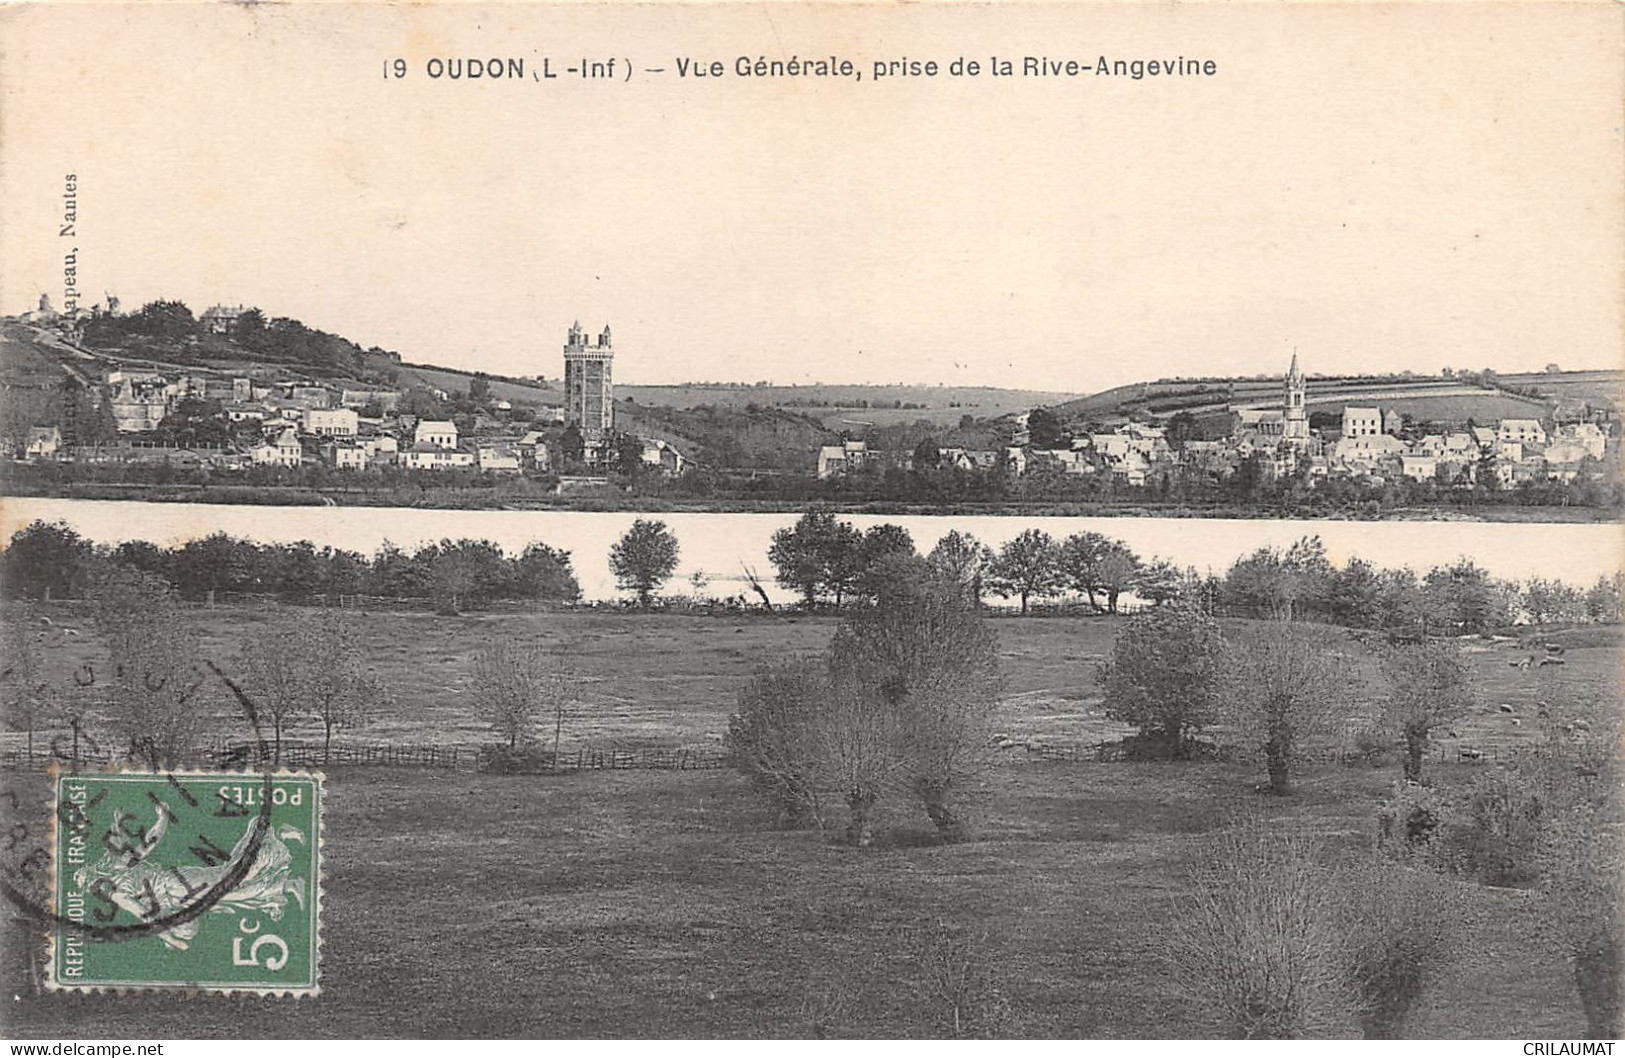 44-OUDON-Vue Generale- Prise De La Rive-Angevine-N 6002-G/0119 - Oudon